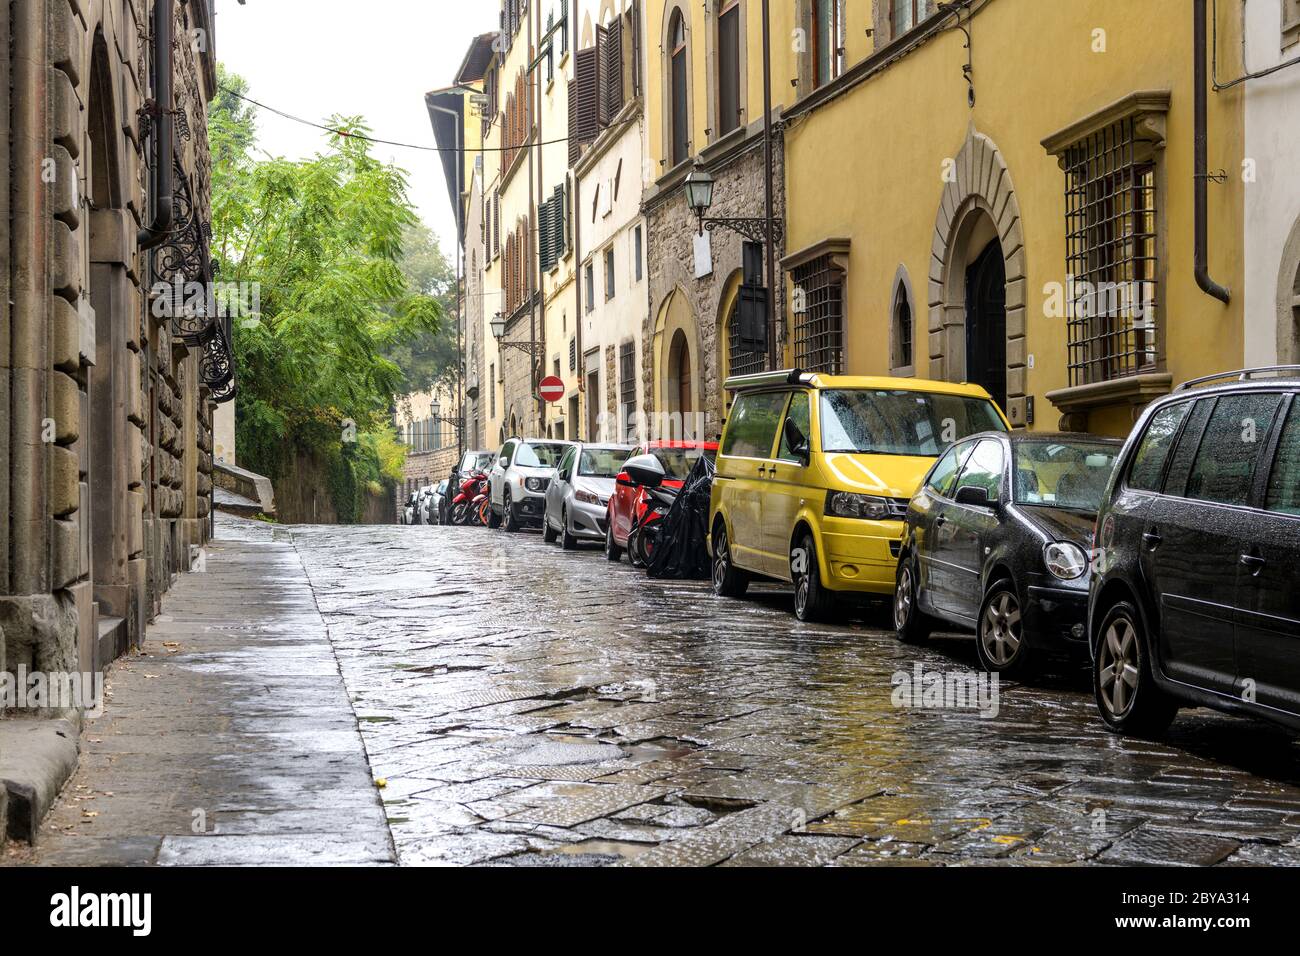 Regentalley - ein Herbst regnerischer Tag in einer ruhigen Seitenstraße eines Wohnviertels in der historischen Altstadt von Florenz. Toskana, Italien. Stockfoto